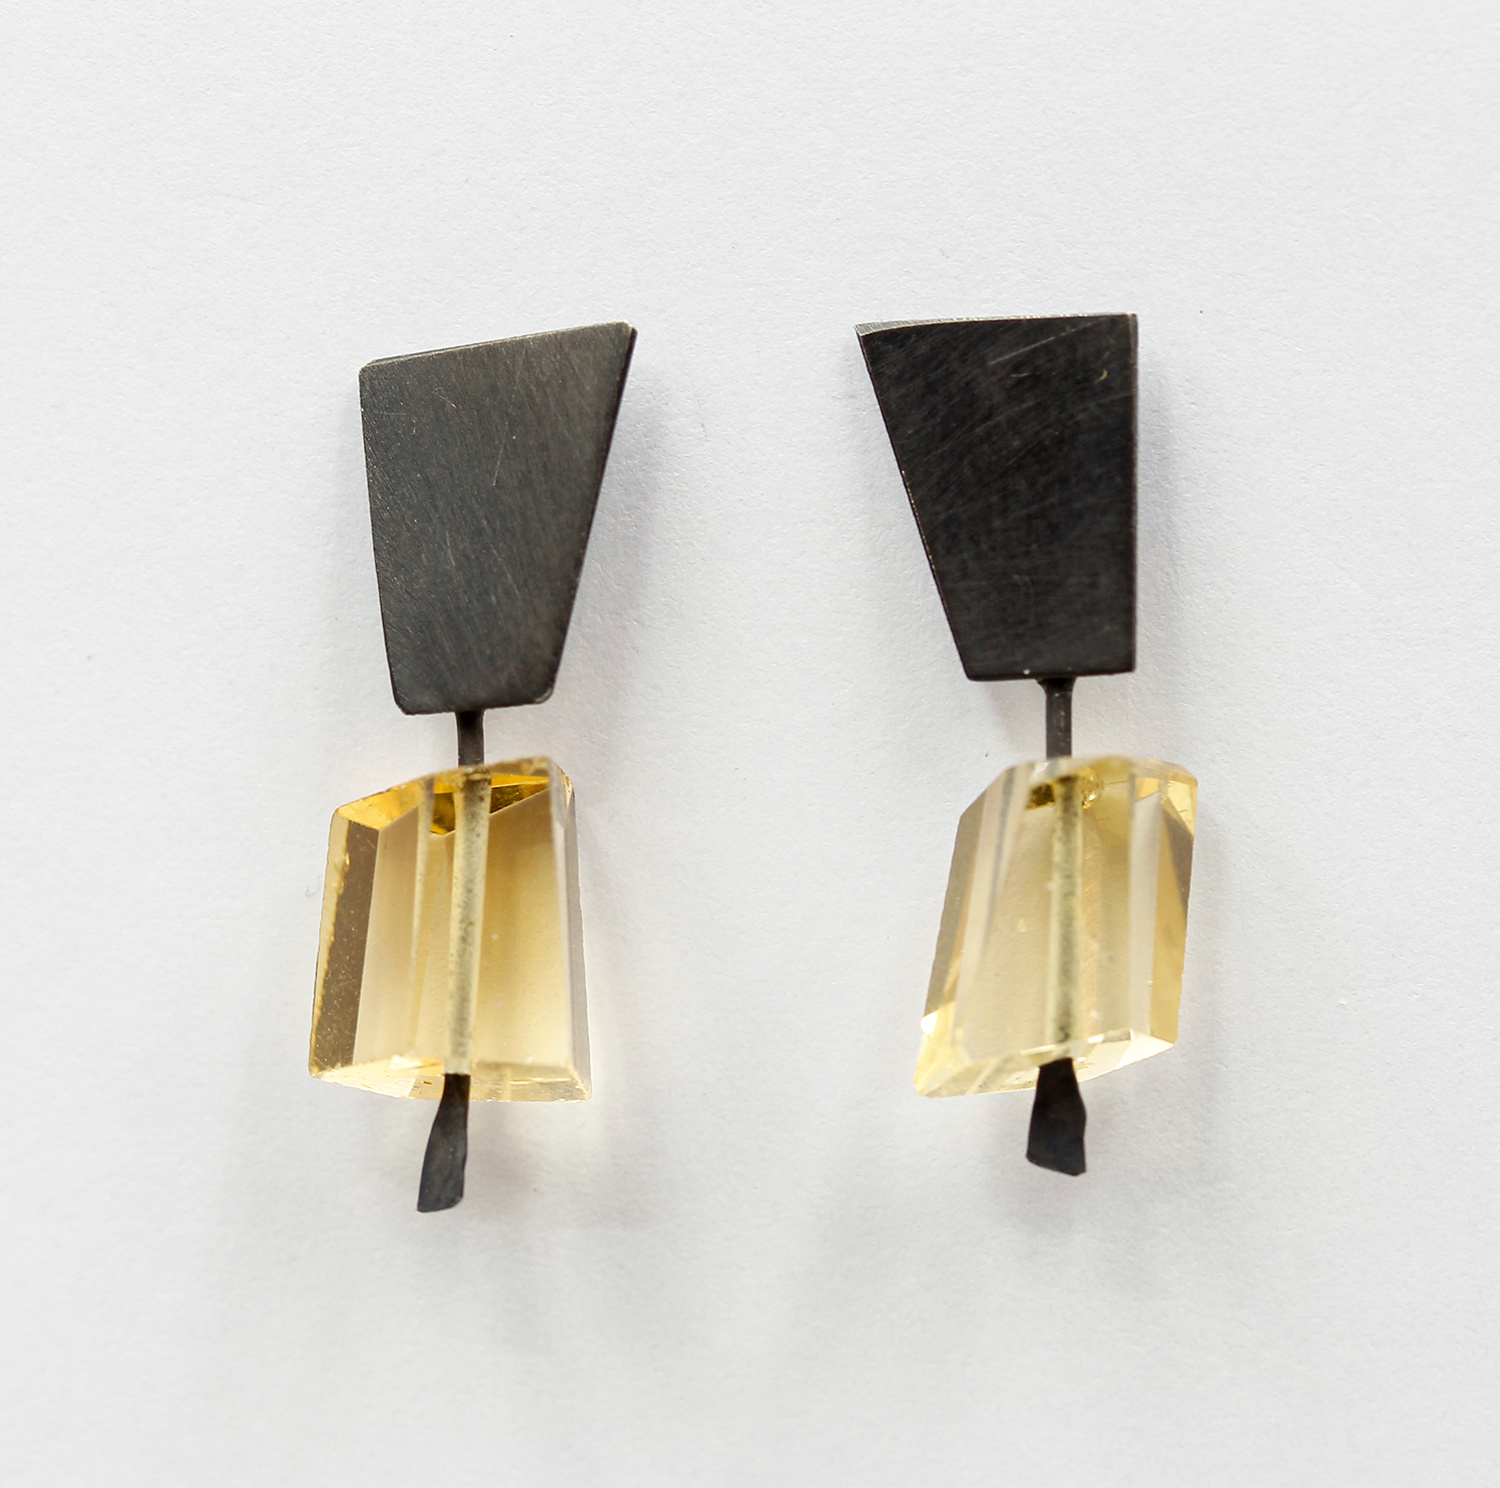 Earrings by Daphne Krinos